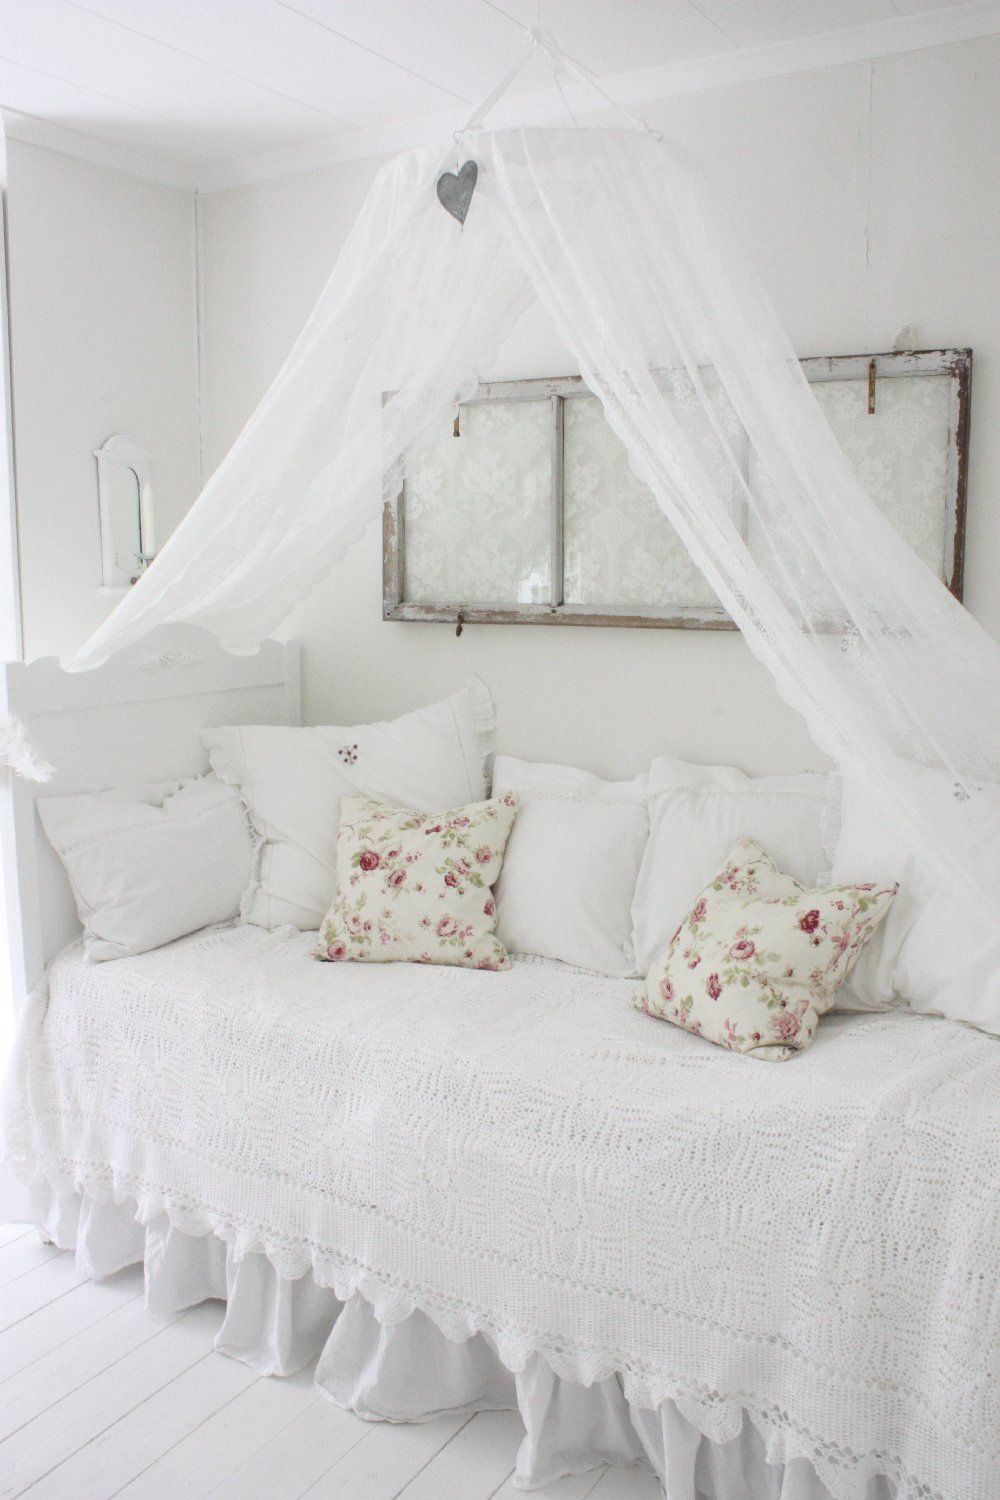 Спальня с балдахином в квартире. балдахин над кроватью – царственная роскошь для алькова. эксперименты с деталями спальни